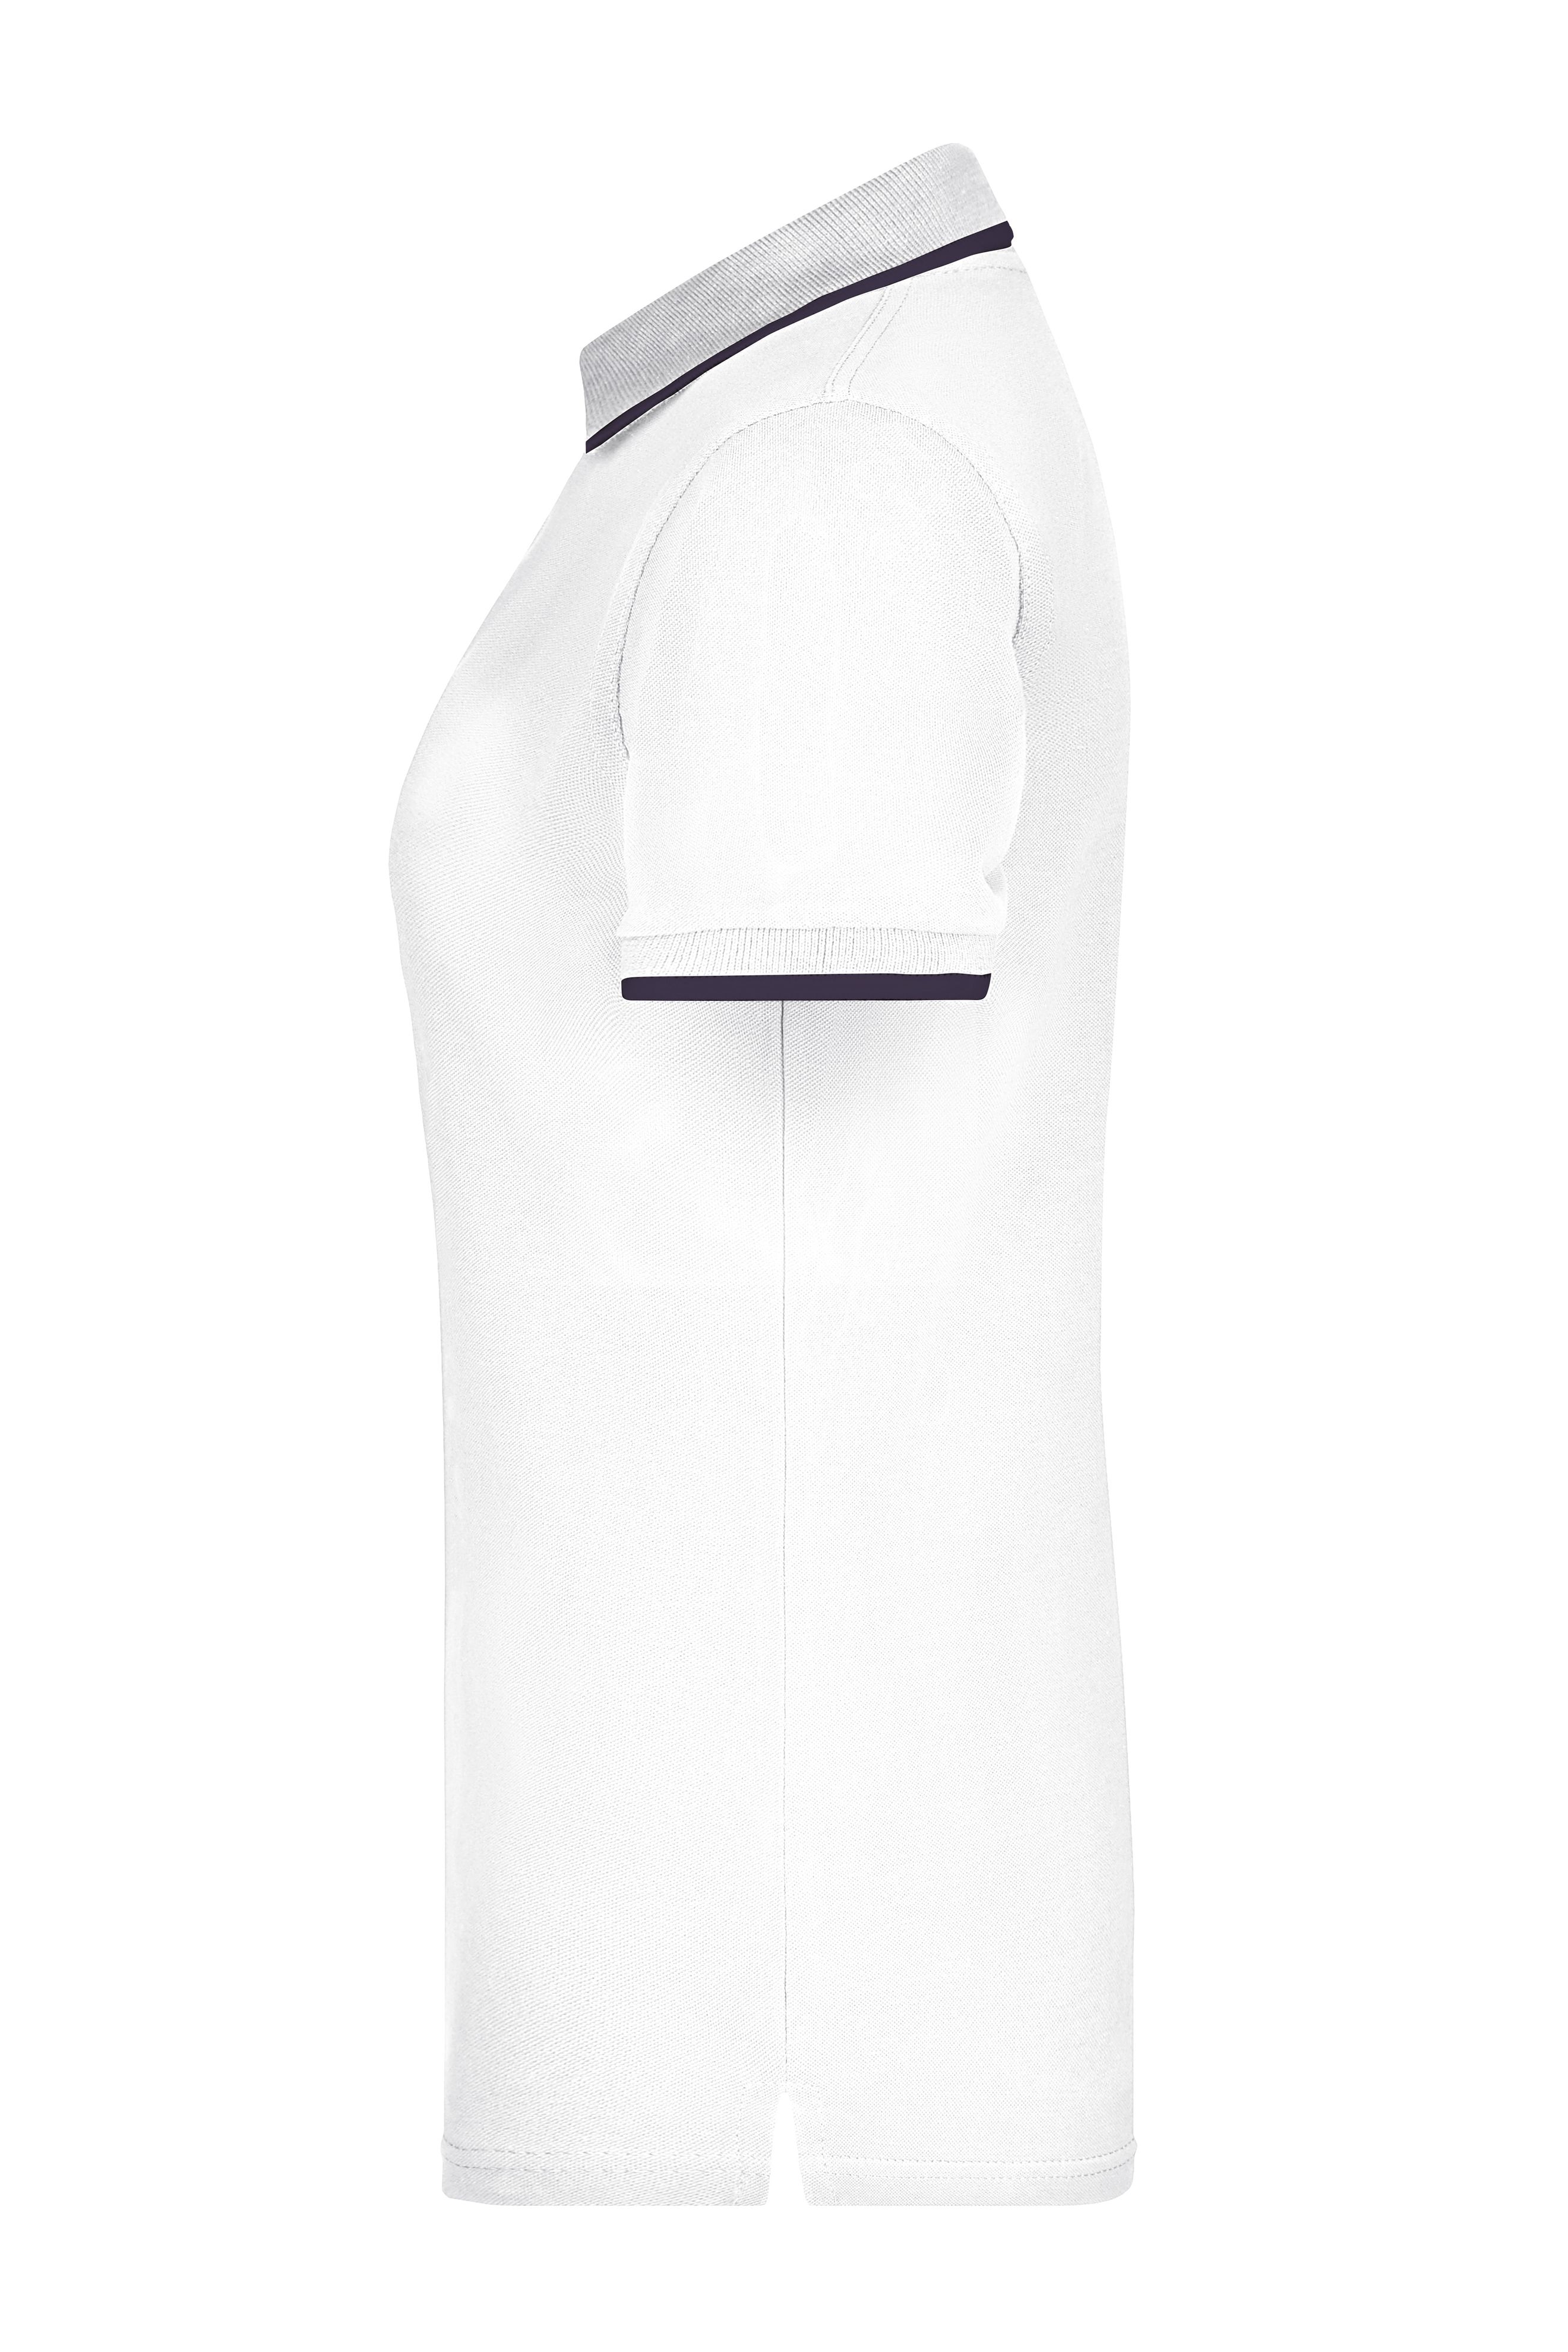 Ladies' Polo Tipping JN934 Hochwertiges Piqué-Polohemd mit Kontraststreifen